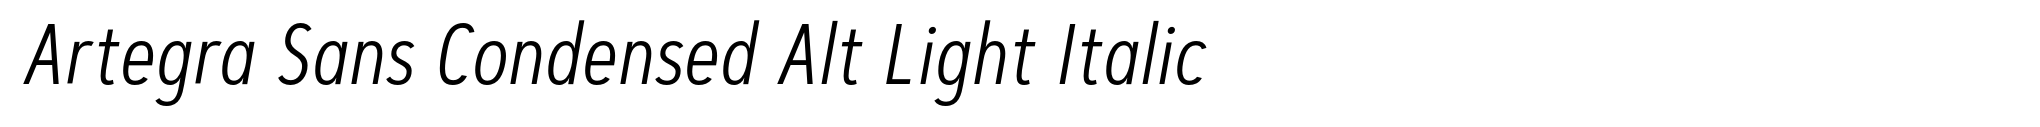 Artegra Sans Condensed Alt Light Italic image